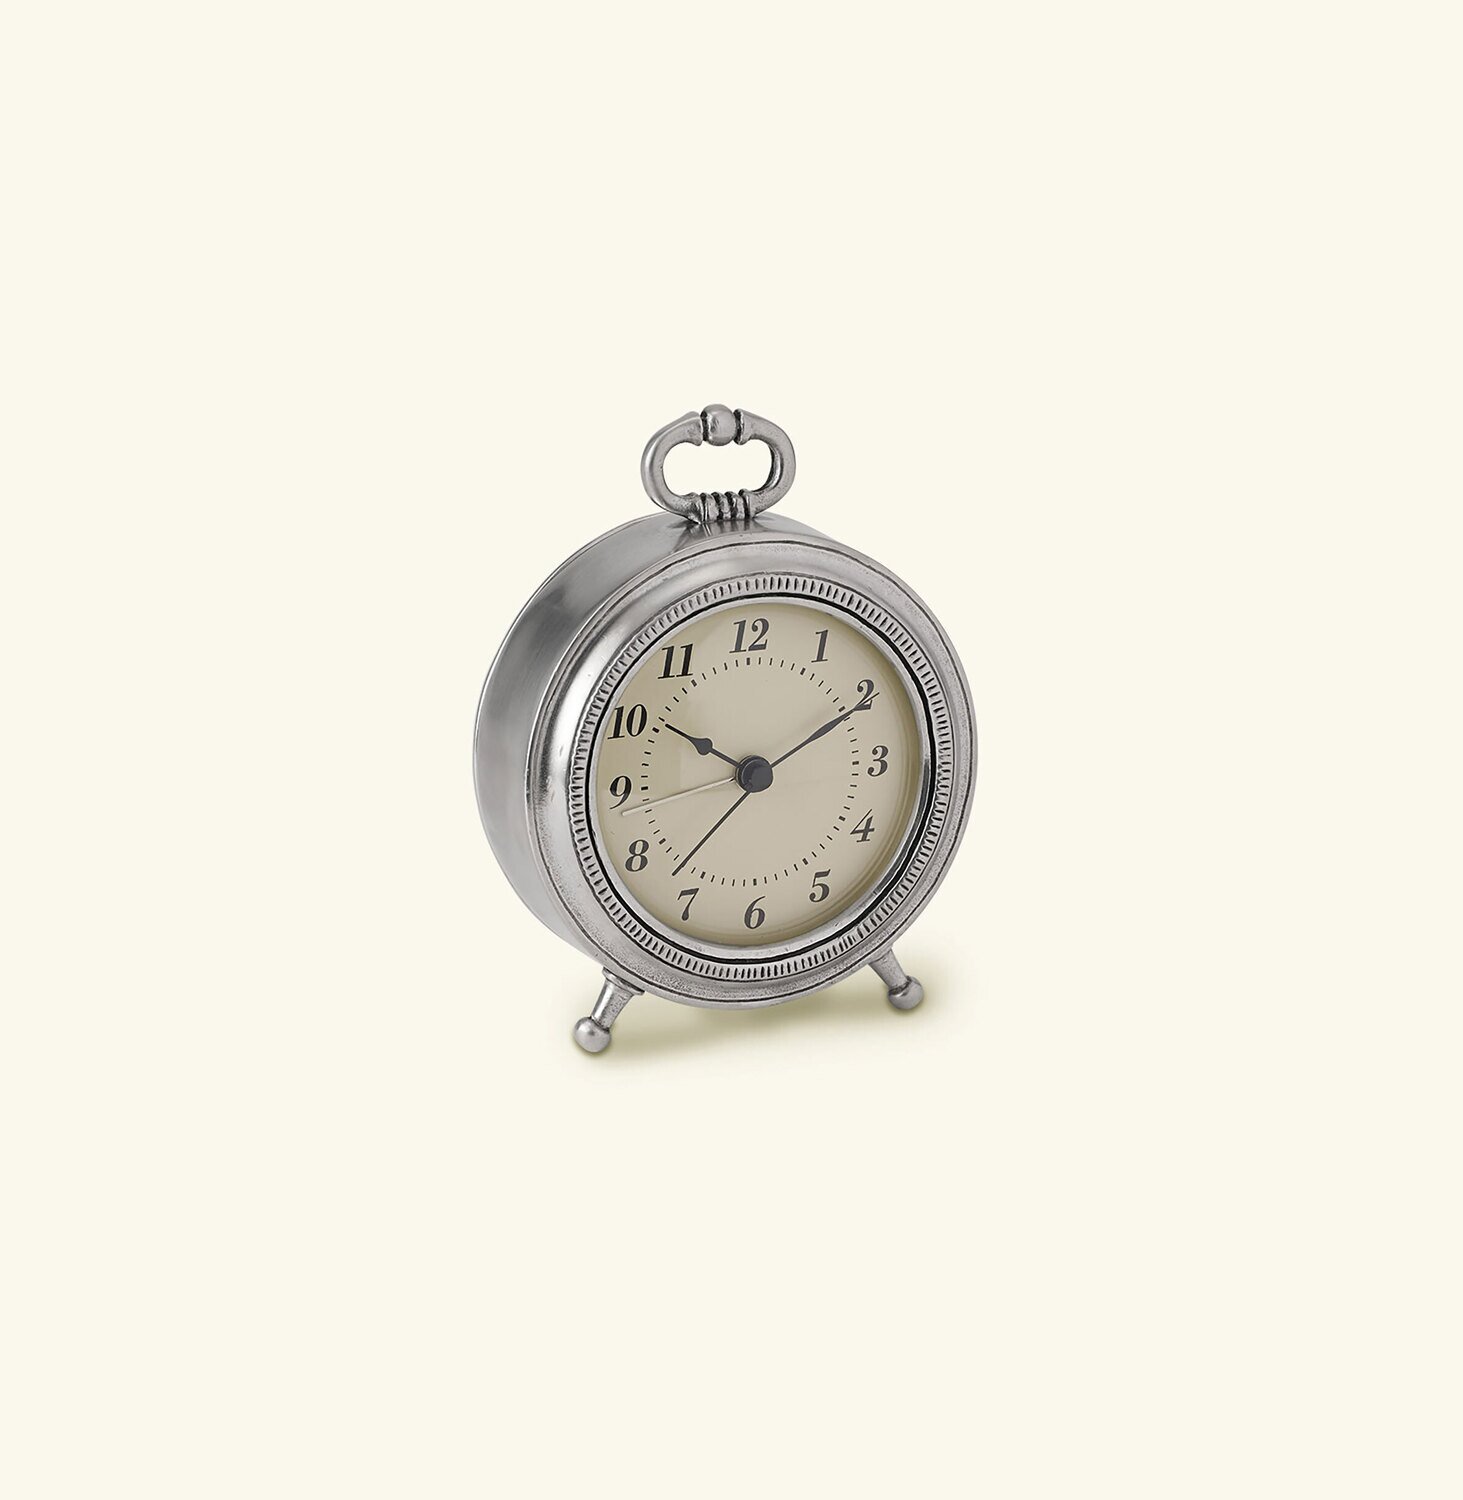 Match Pewter Toscana Alarm Clock 1137